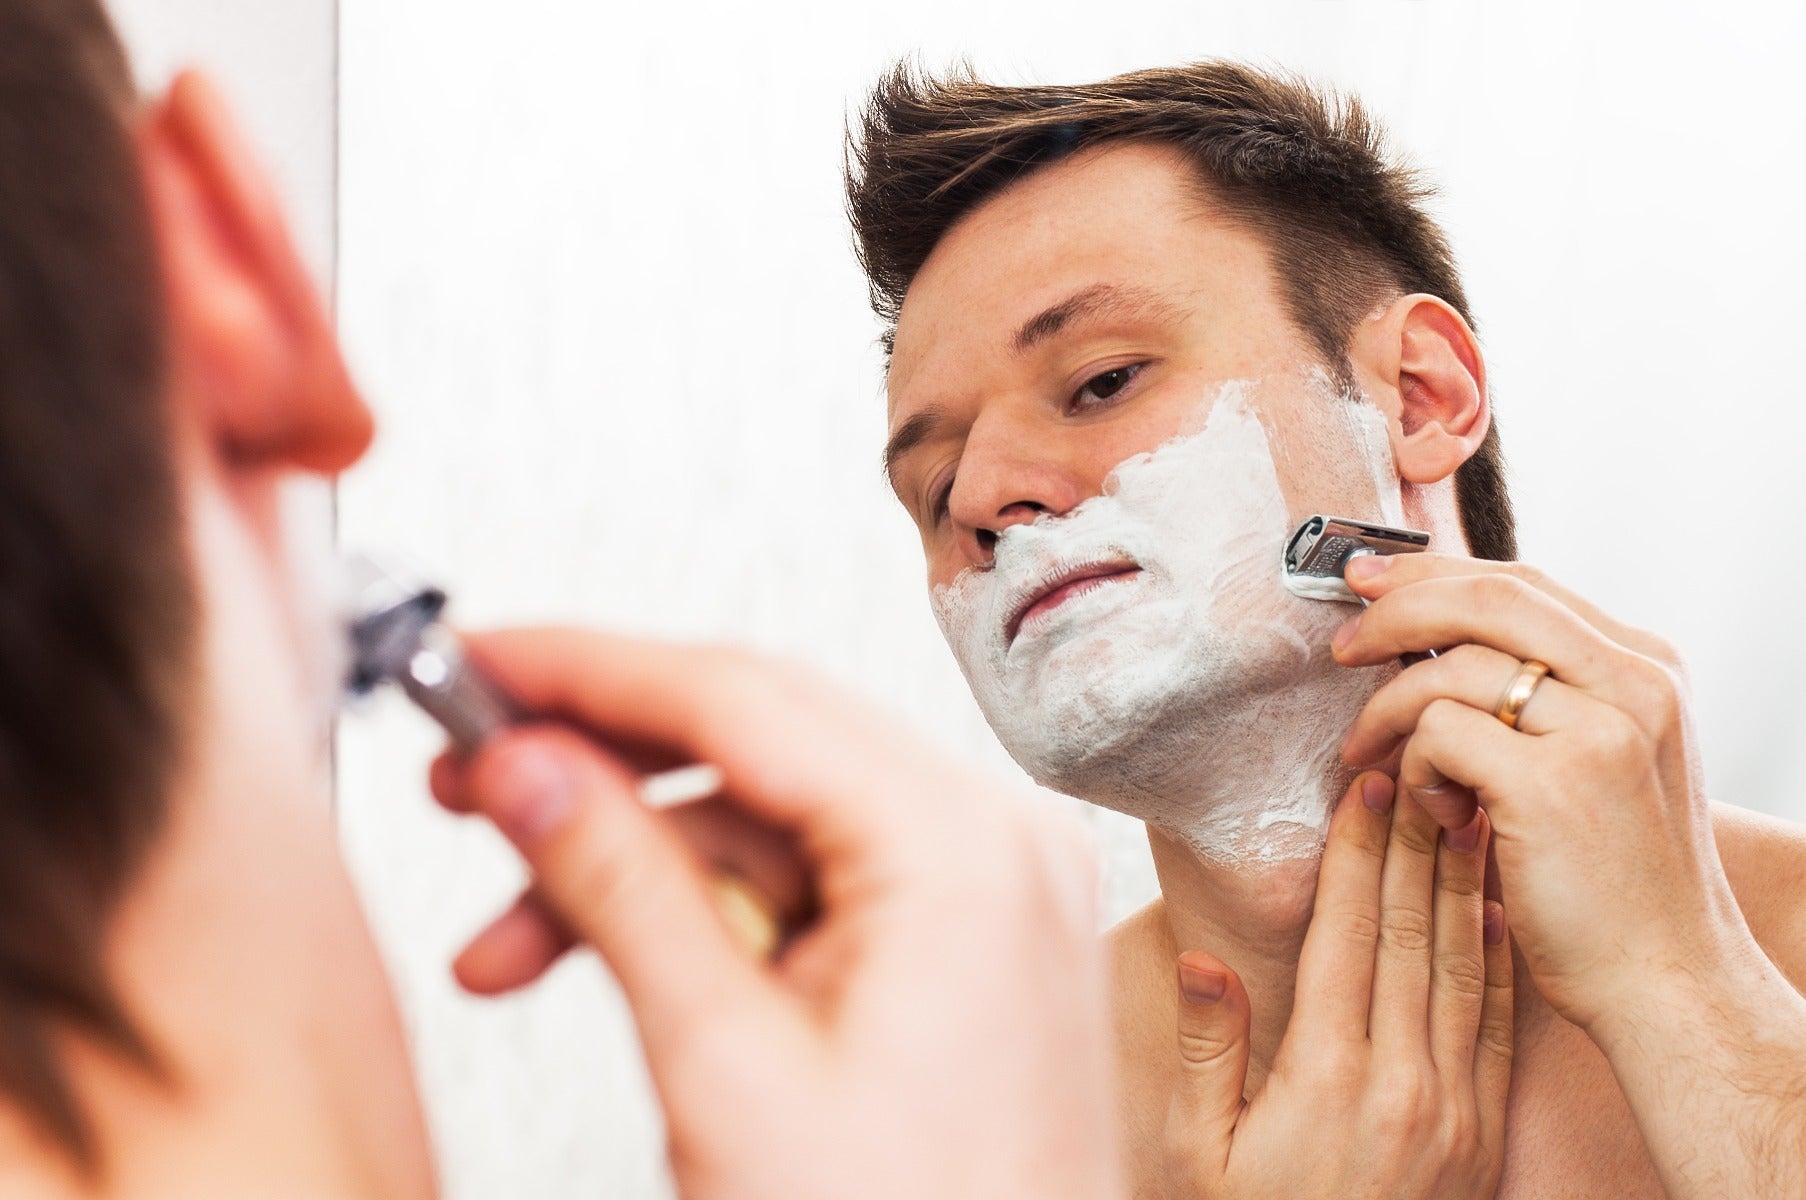 shaving with safety razor